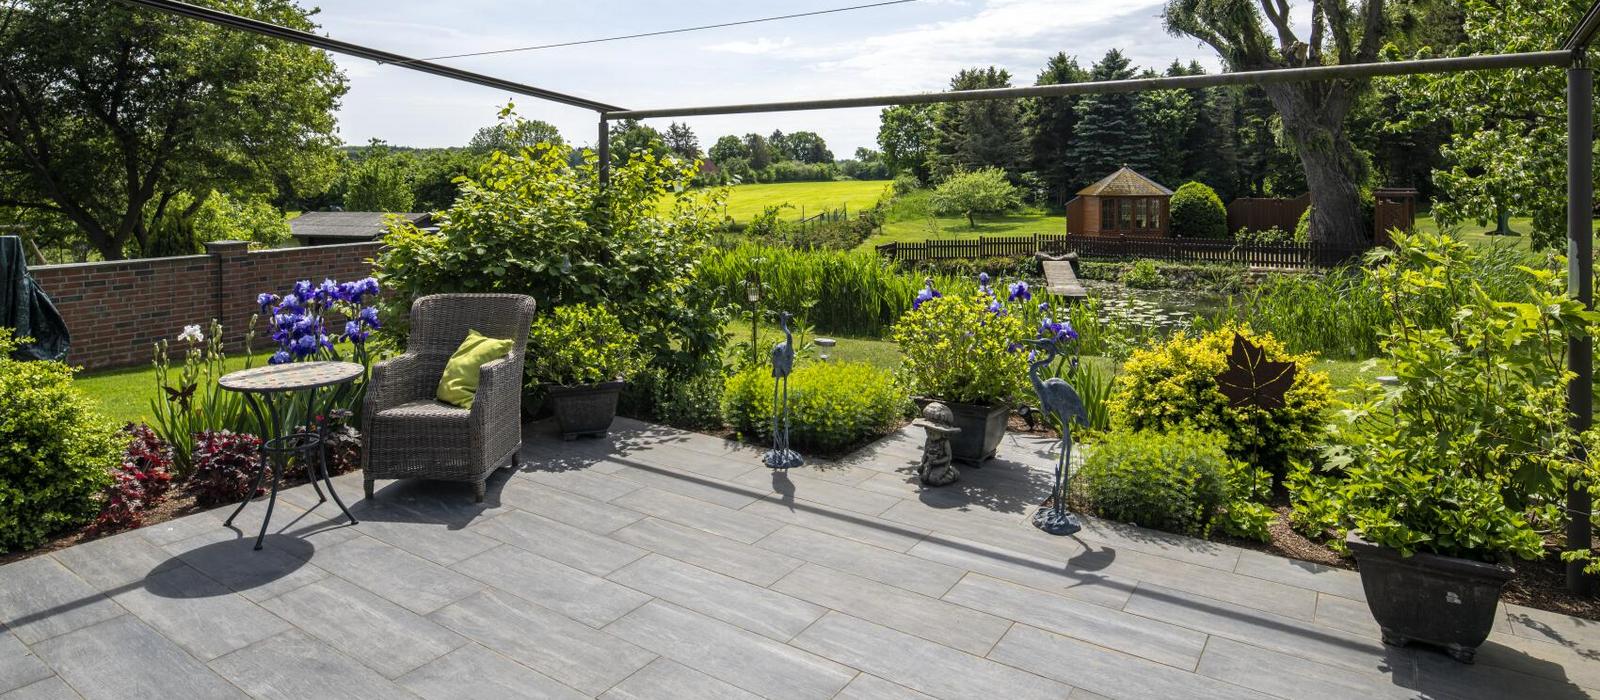 Terrasse in Holzoptik mit Pflanzen